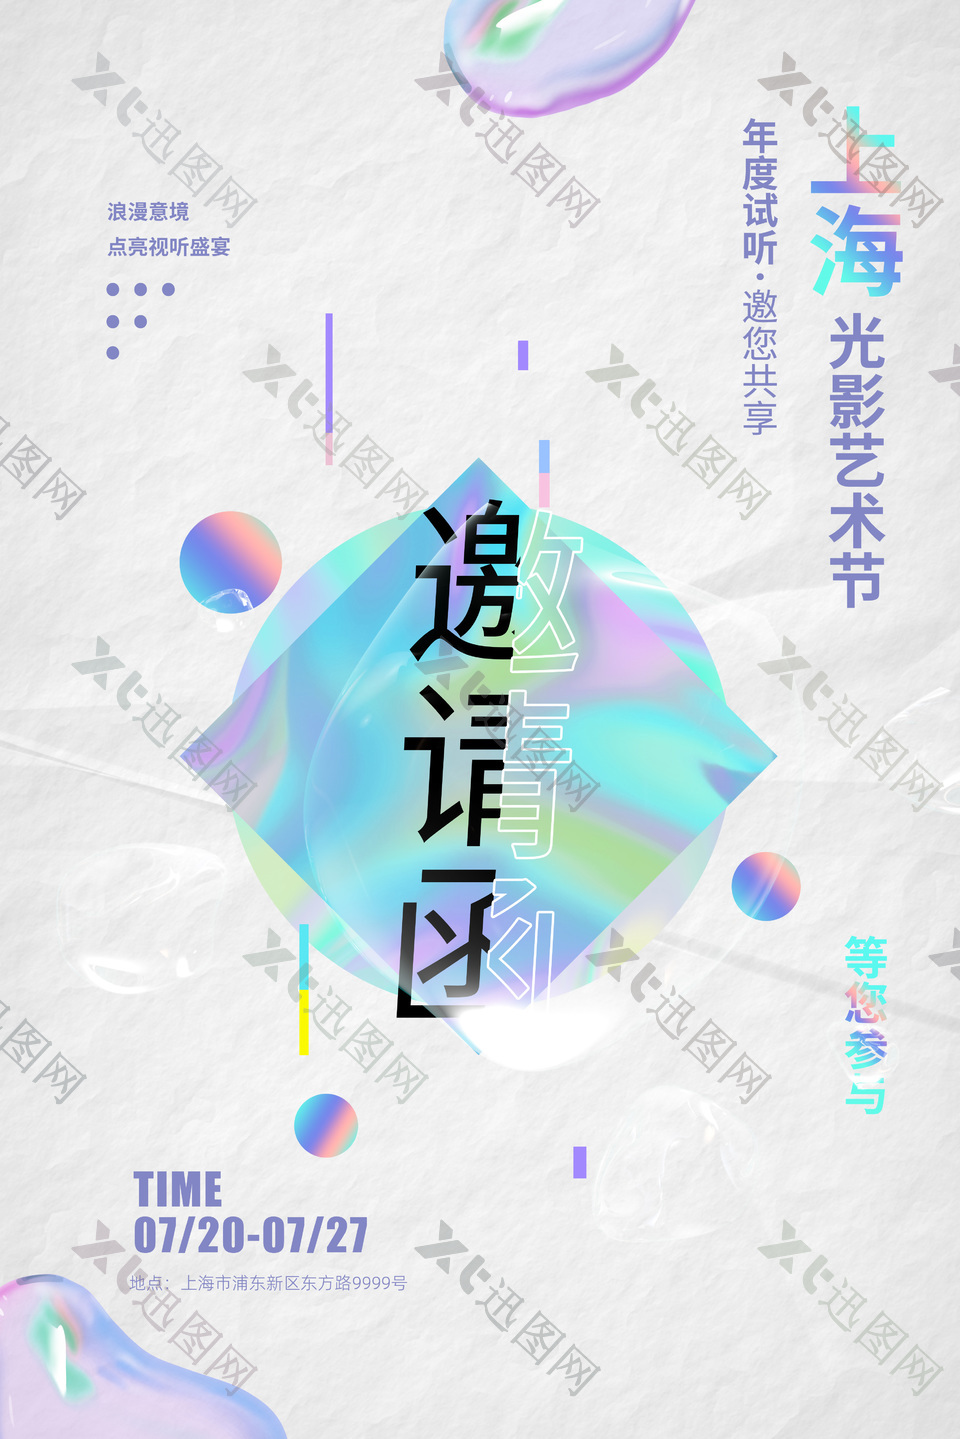 上海光影艺术节邀请函素材设计下载